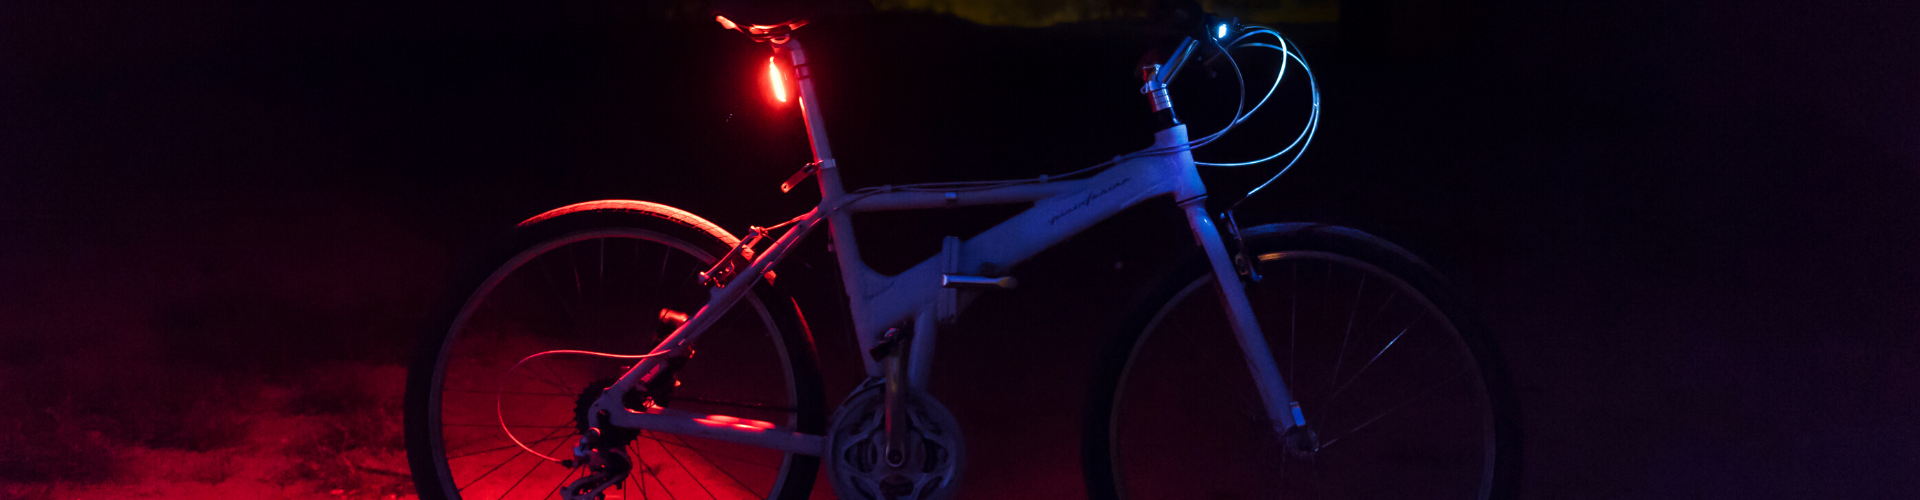 La iluminación en la bicicleta